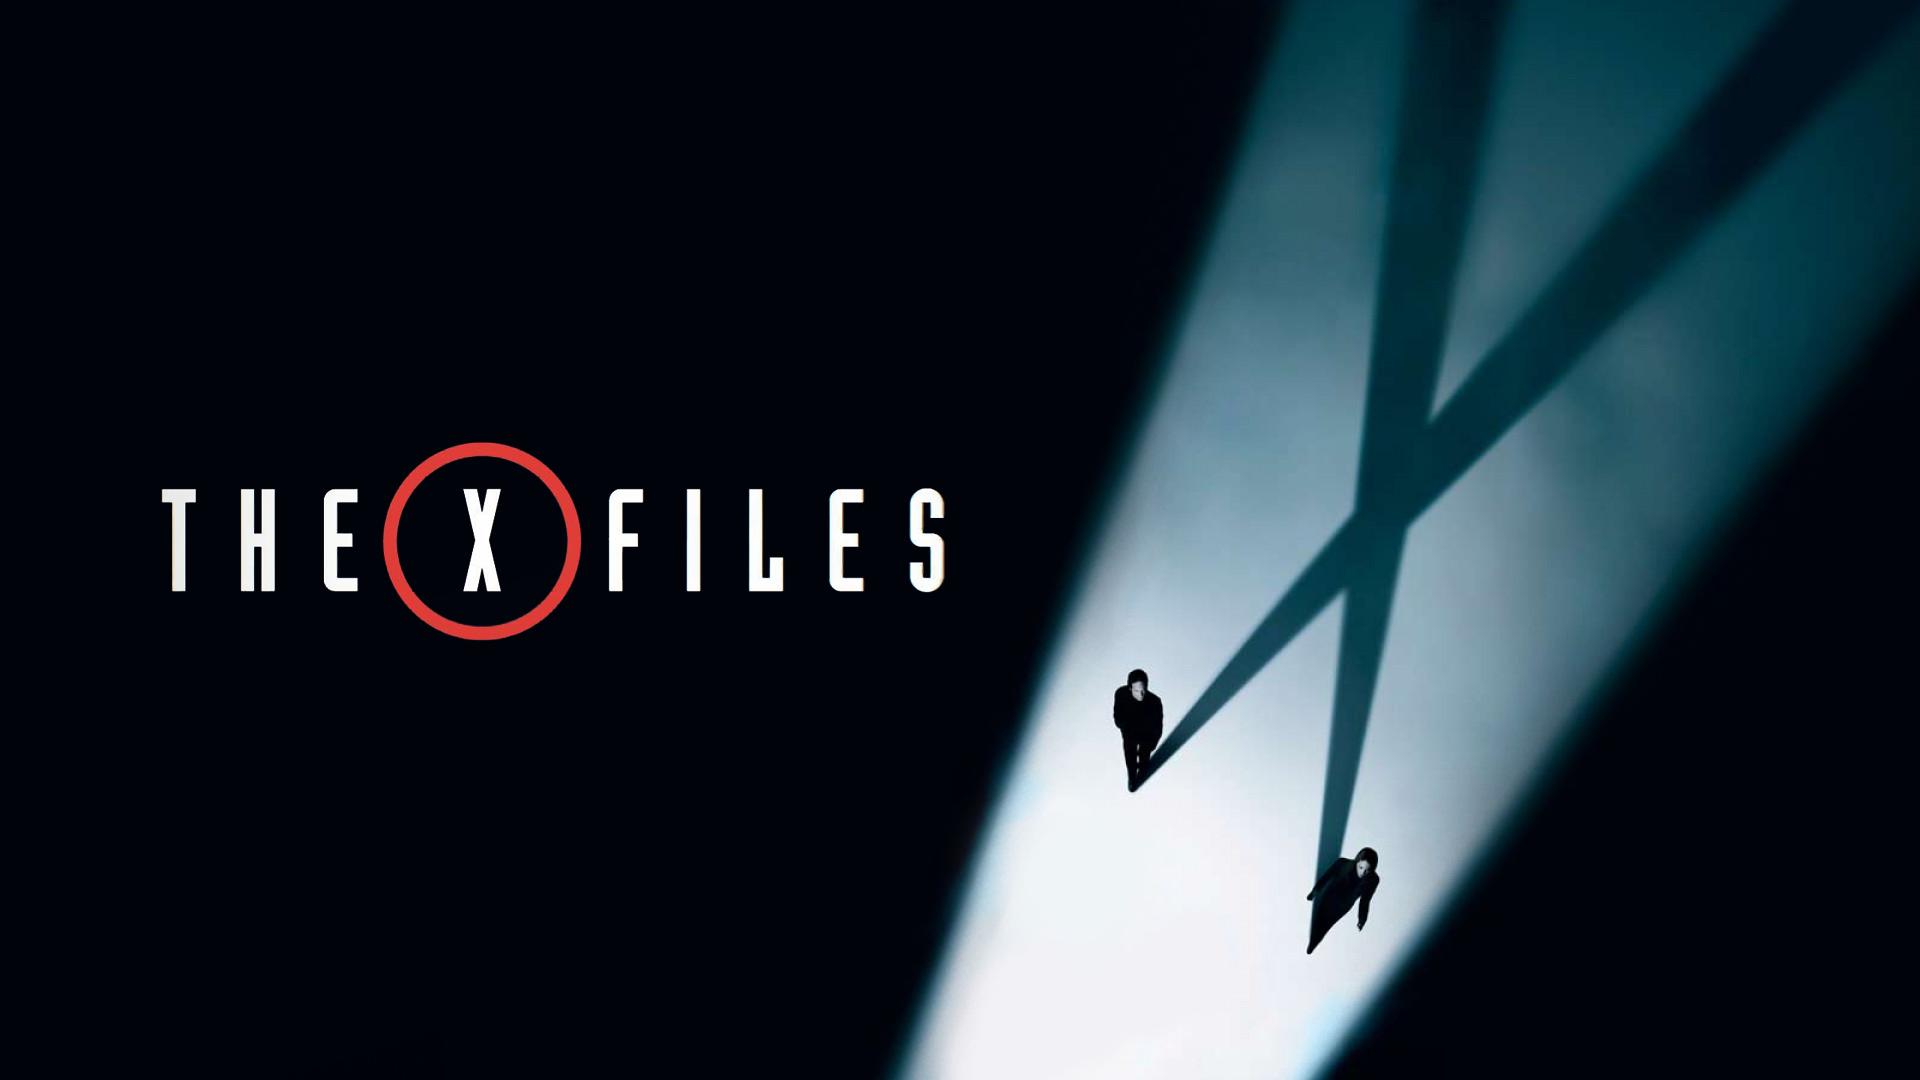 The X Files Dana Scully Gillian Anderson David Duchovny Fox Mulder Cyan Shadow 1920x1080